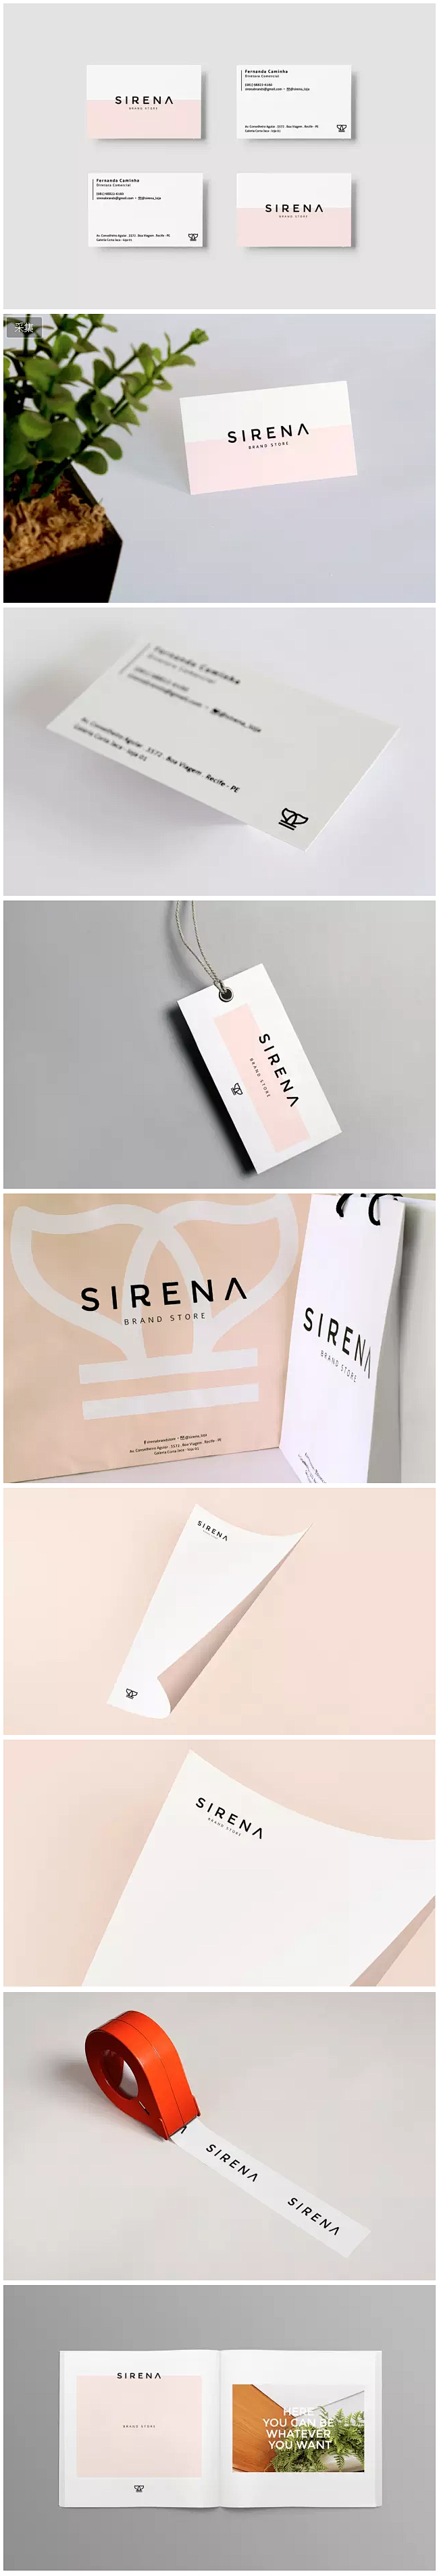 Sirena女性服装店品牌形象设计 #设...